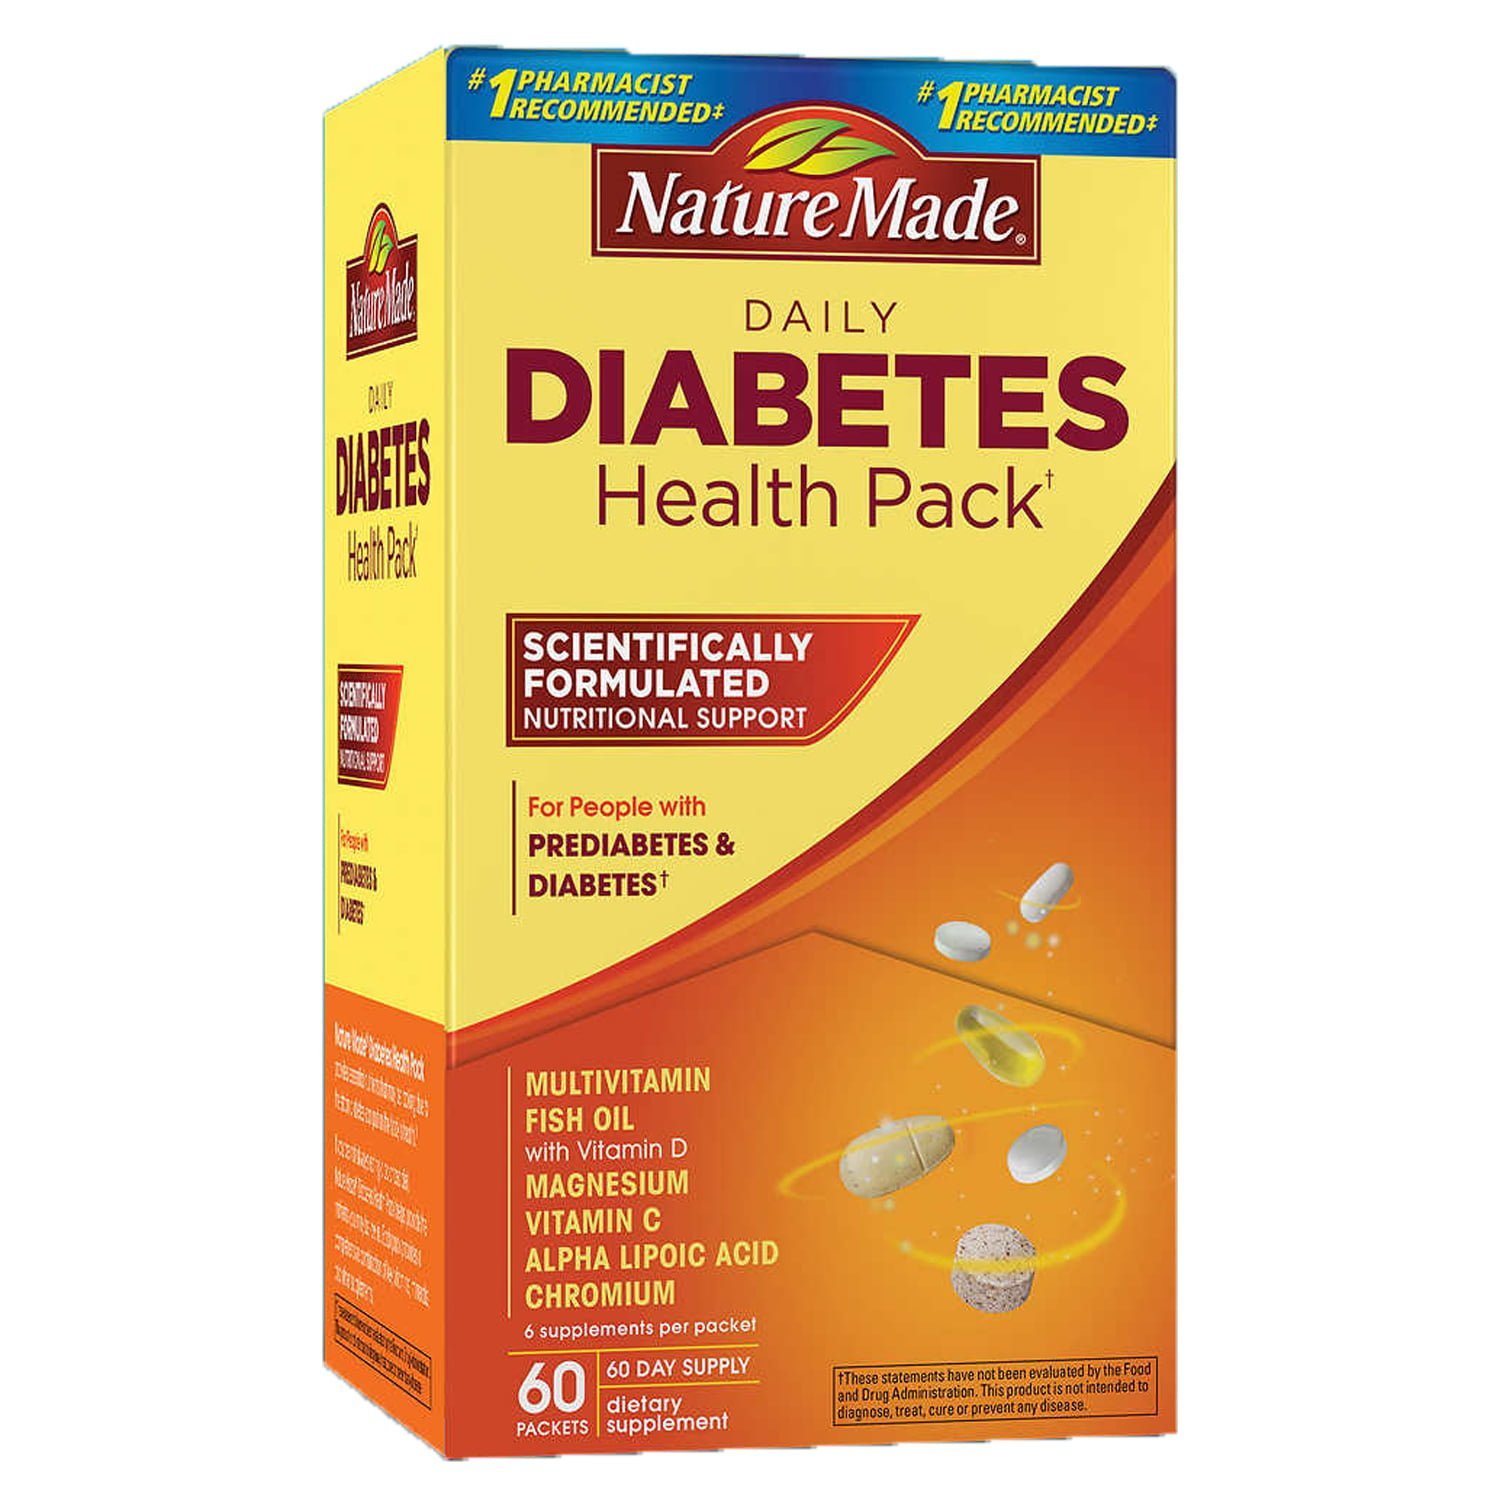 Diabetes Health Pack